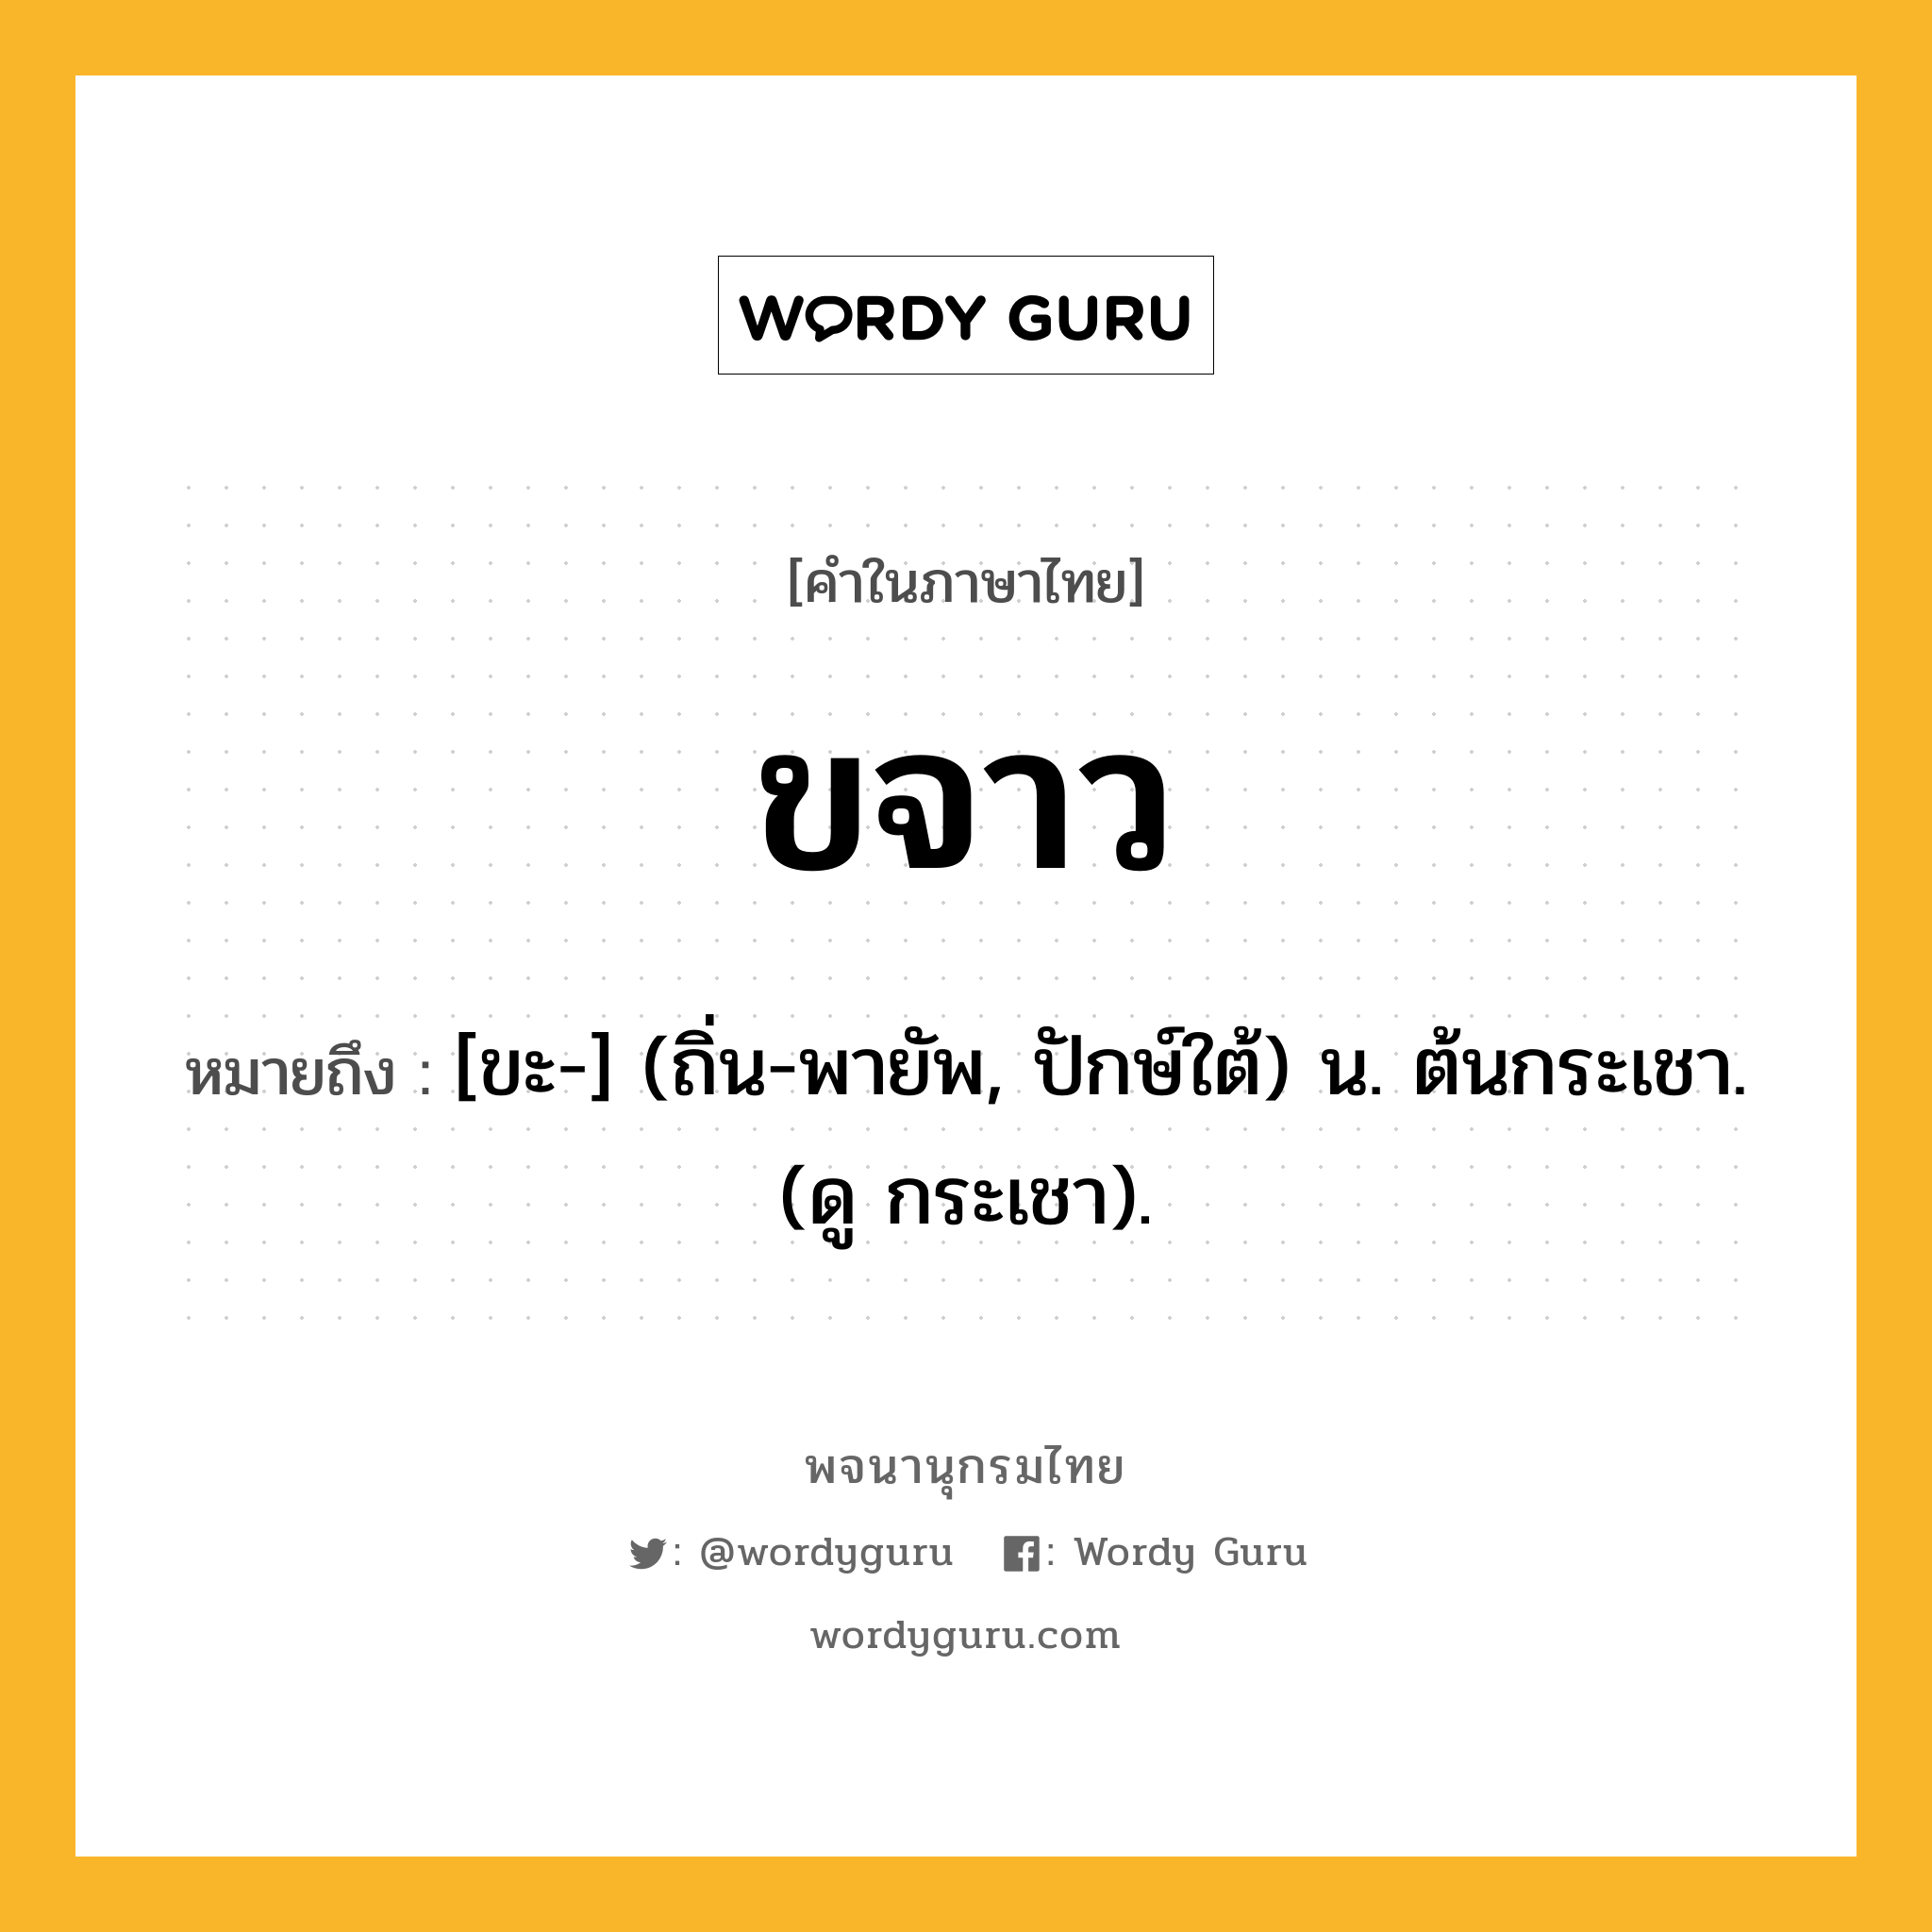 ขจาว หมายถึงอะไร?, คำในภาษาไทย ขจาว หมายถึง [ขะ-] (ถิ่น-พายัพ, ปักษ์ใต้) น. ต้นกระเชา. (ดู กระเชา).